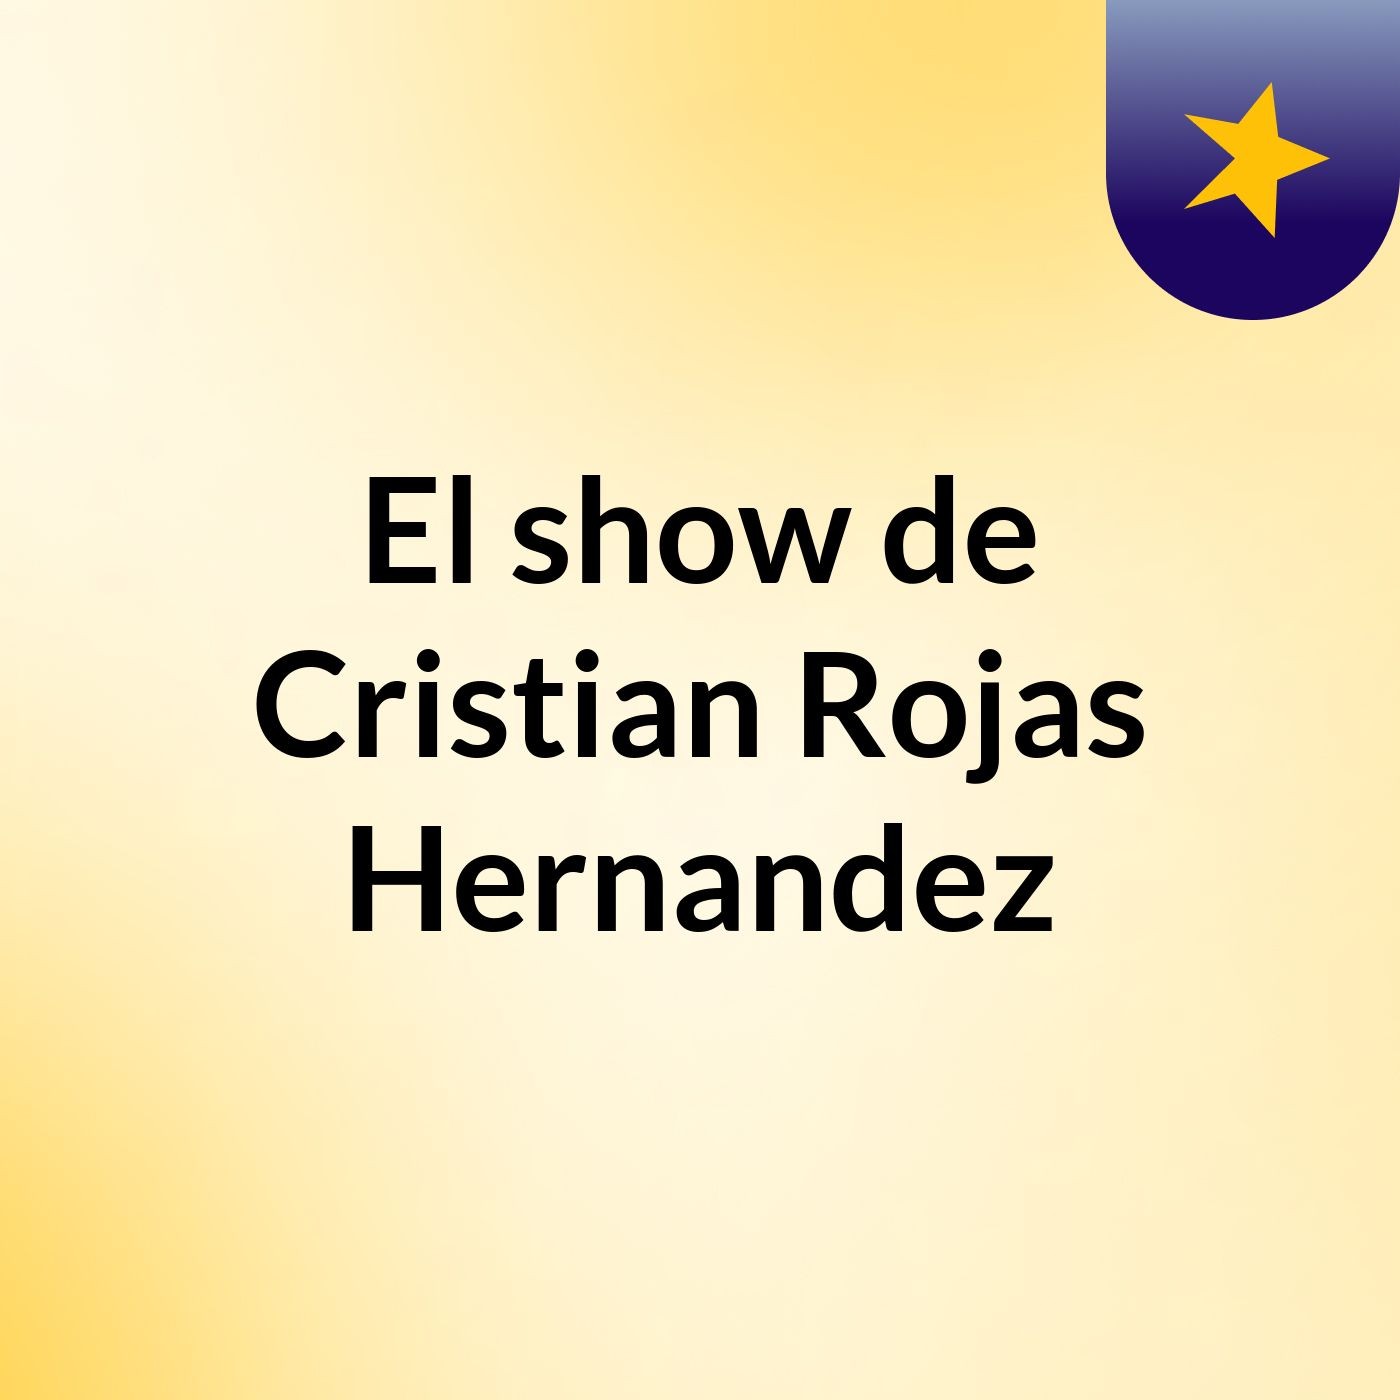 El show de Cristian Rojas Hernandez